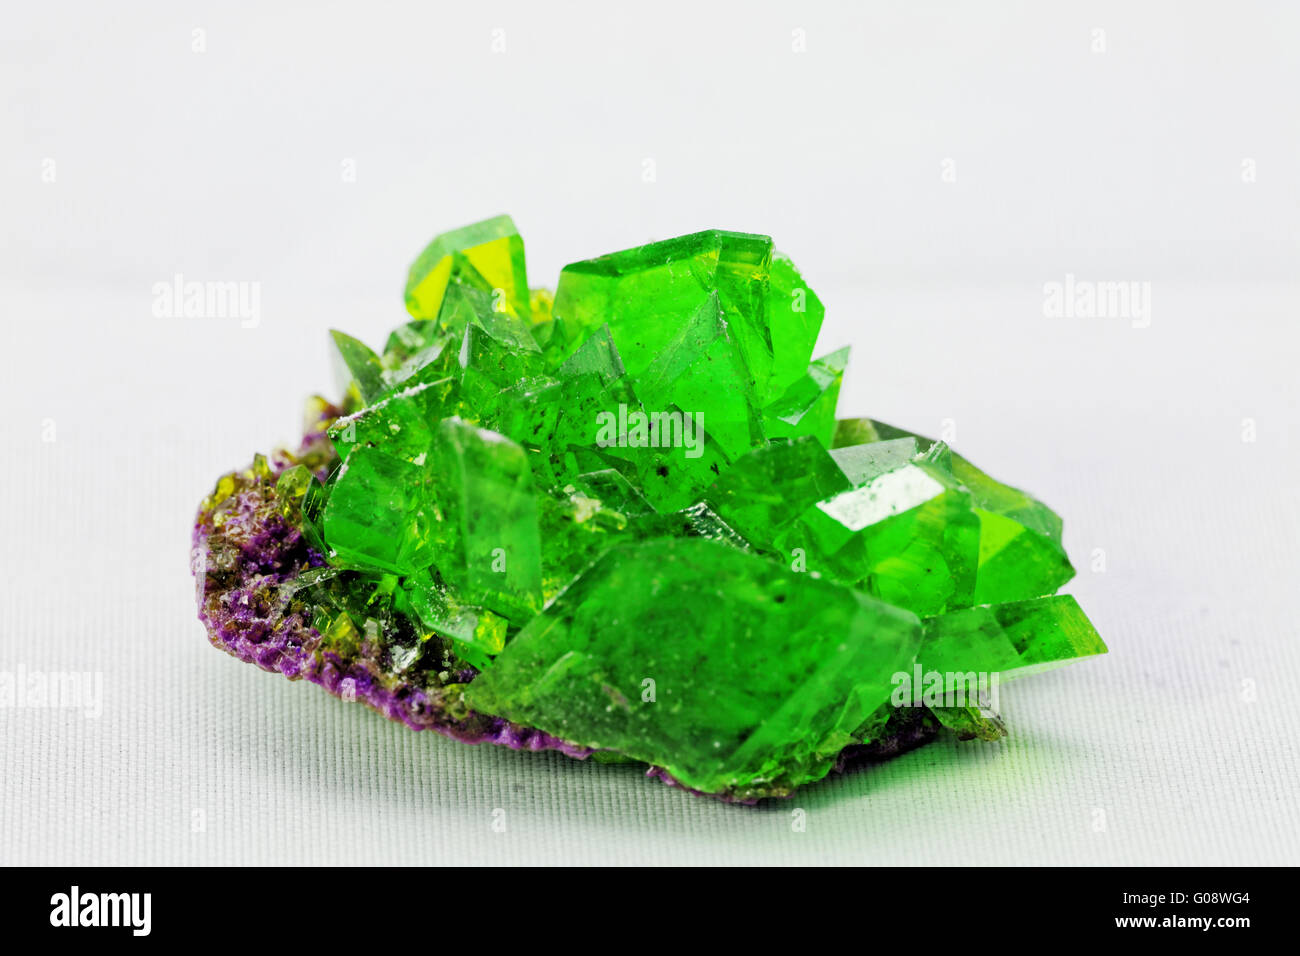 Close up picture circa un cristallo con colore smeraldo su sfondo bianco (green crystal) Foto Stock